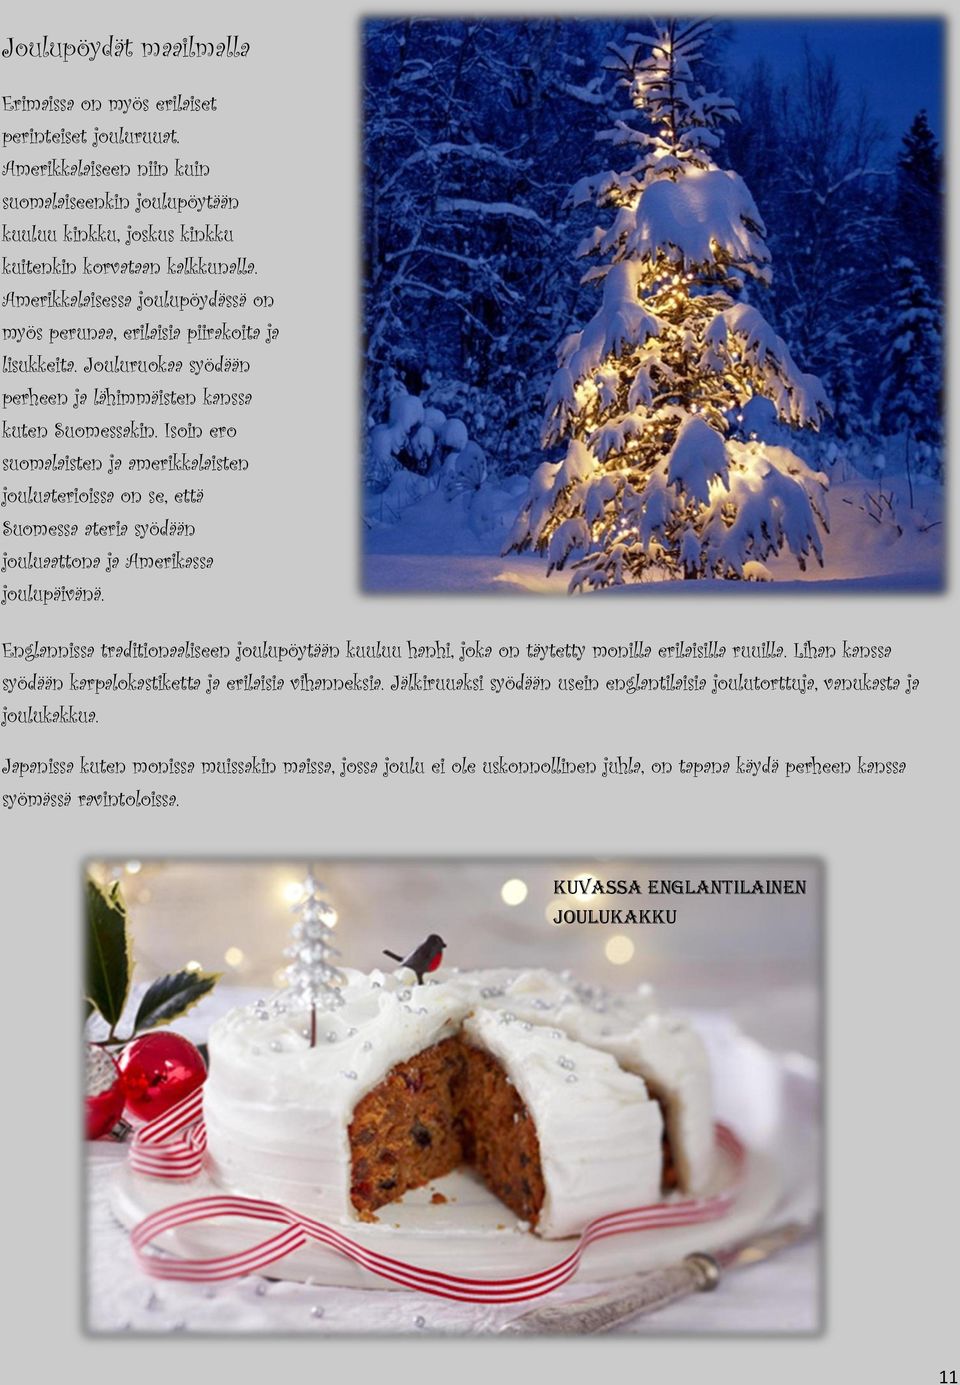 Isoin ero suomalaisten ja amerikkalaisten jouluaterioissa on se, että Suomessa ateria syödään jouluaattona ja Amerikassa joulupäivänä.